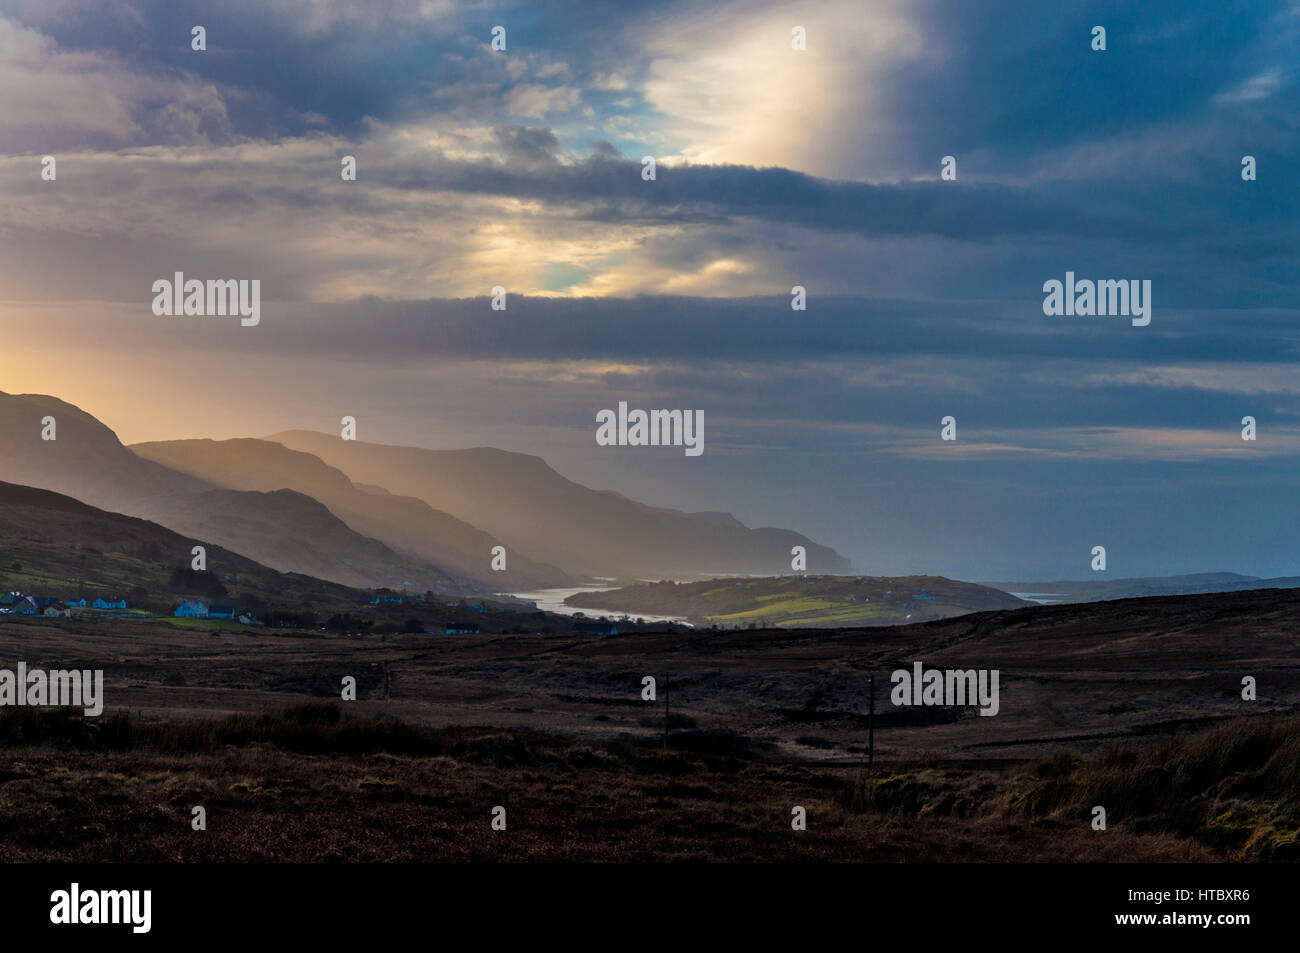 Blick vom Decke Moor über Küsten-Dorf Ardara, County Donegal, Irland. Teil Irlands Wilde Atlantik Weg Stockfoto